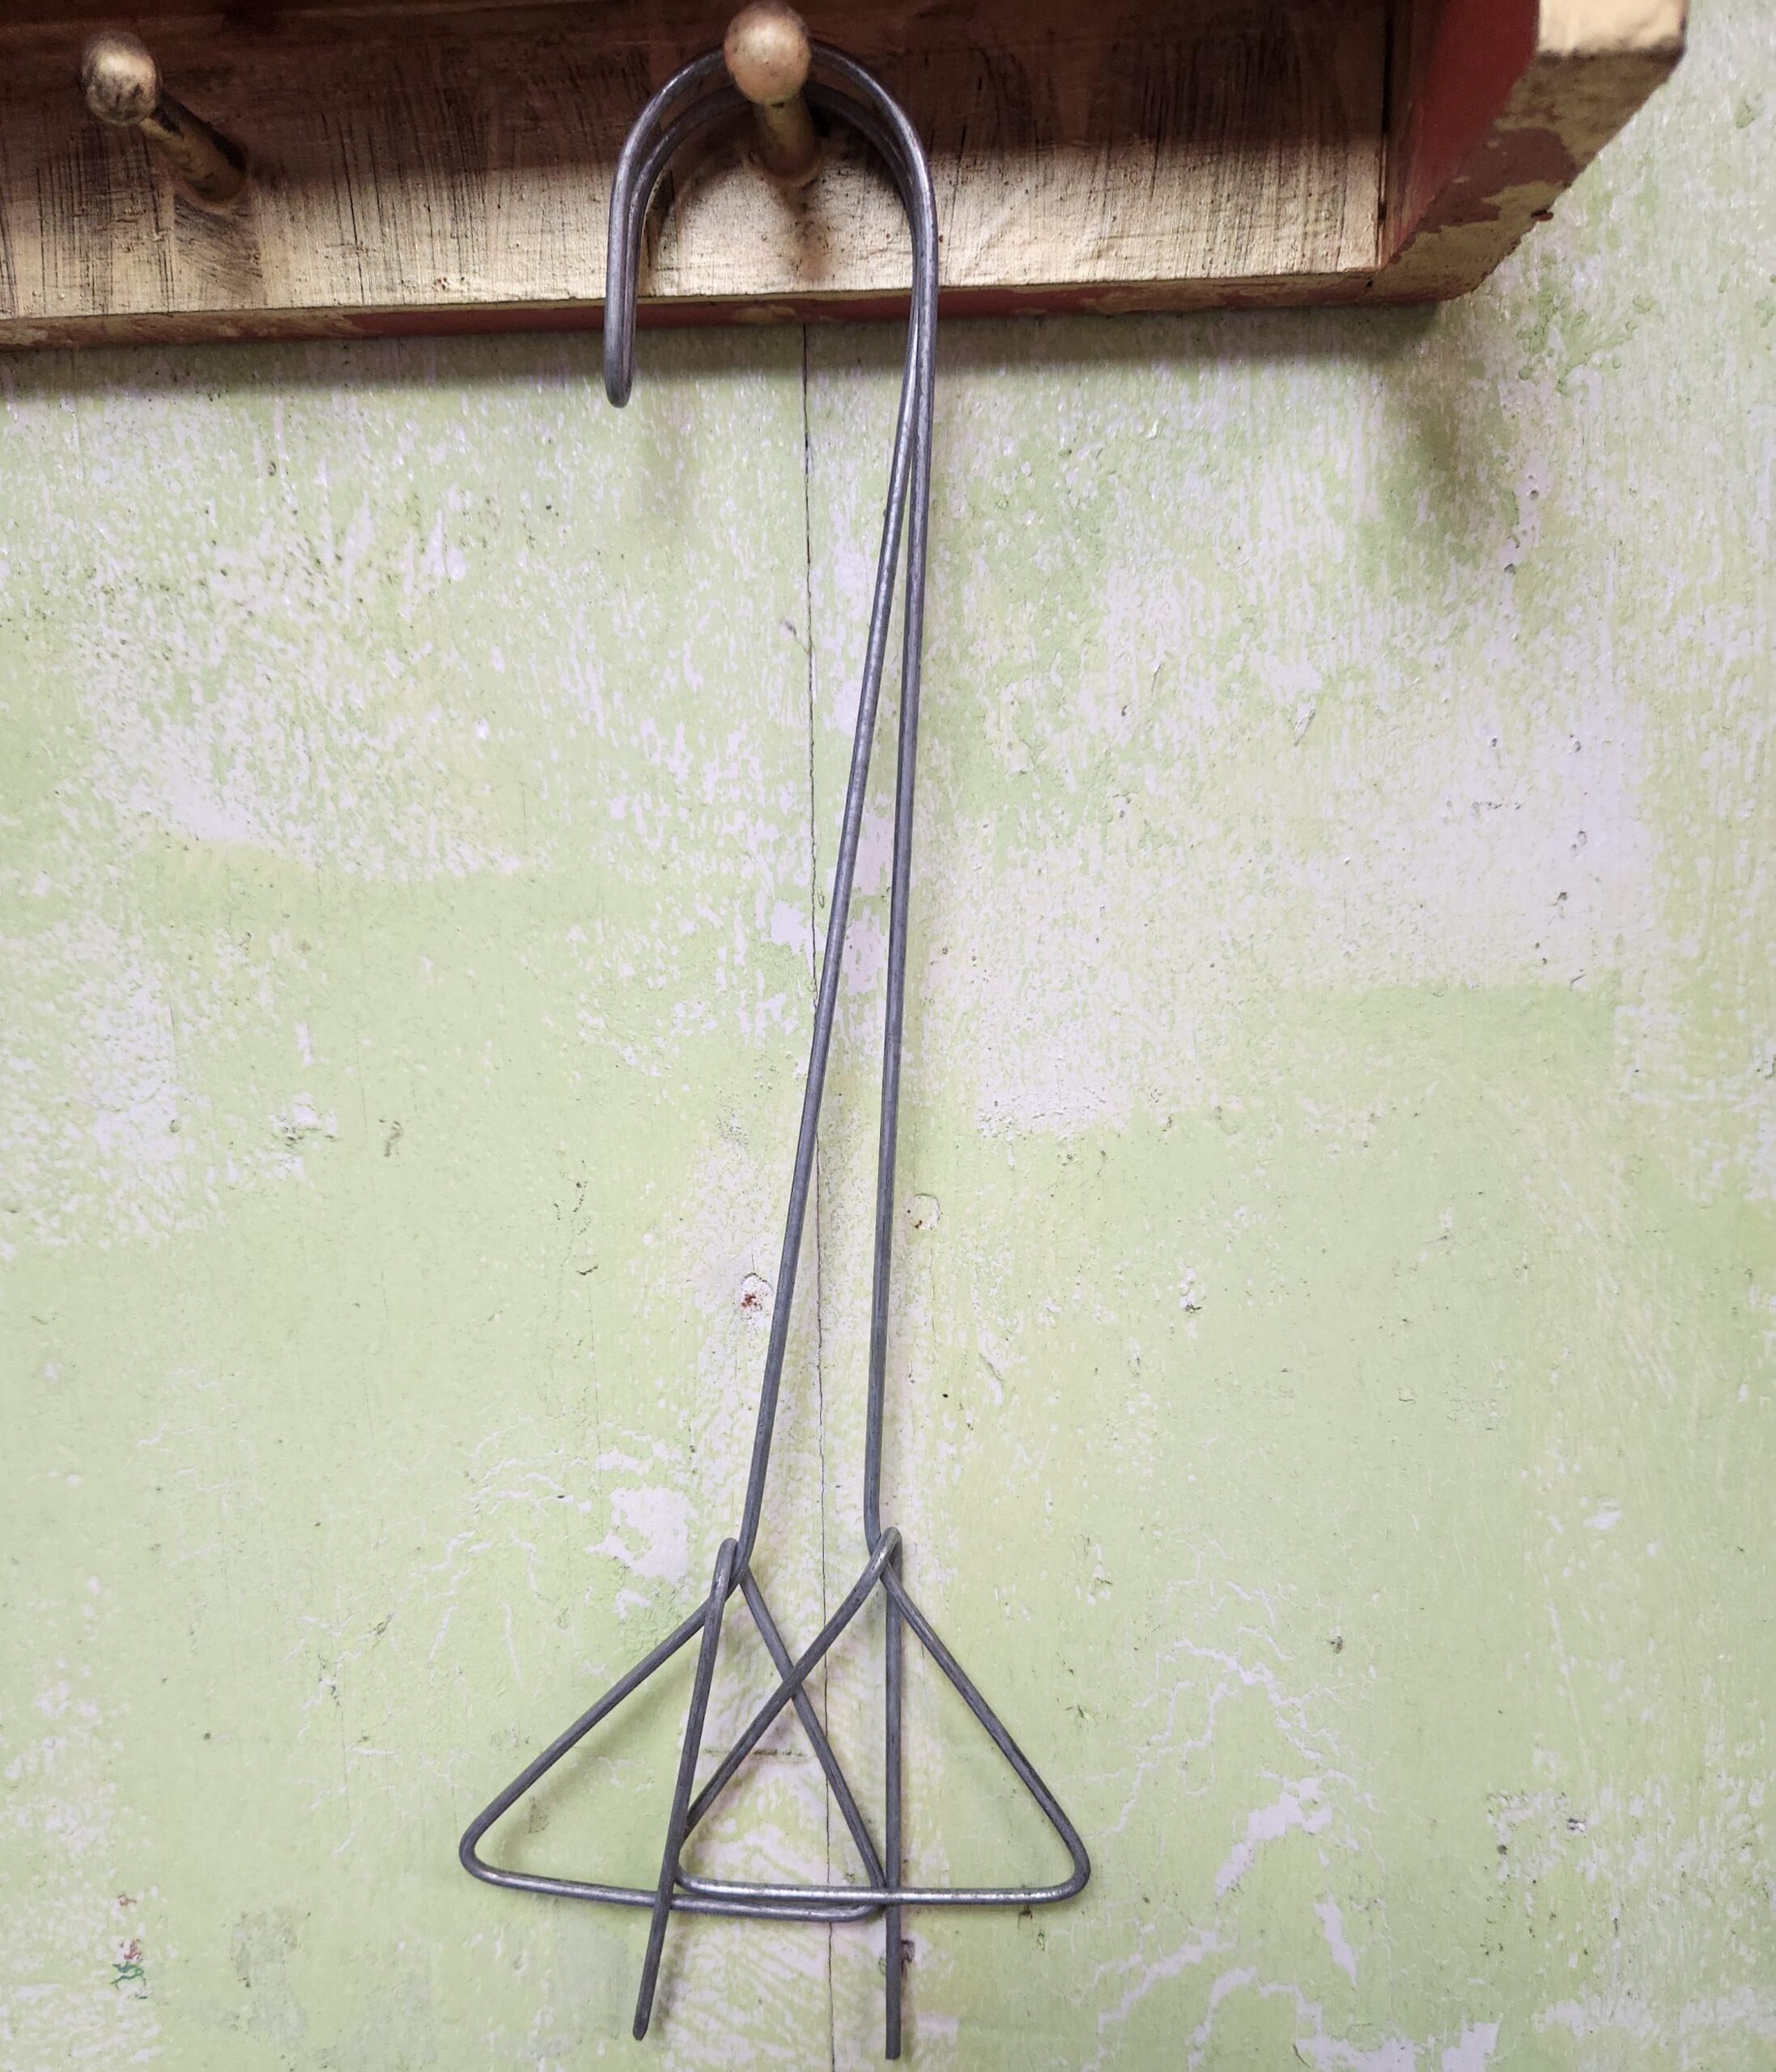 Orchid Nerd ™ Galvanized Double Clay Pot Metal Hangers 18 inch